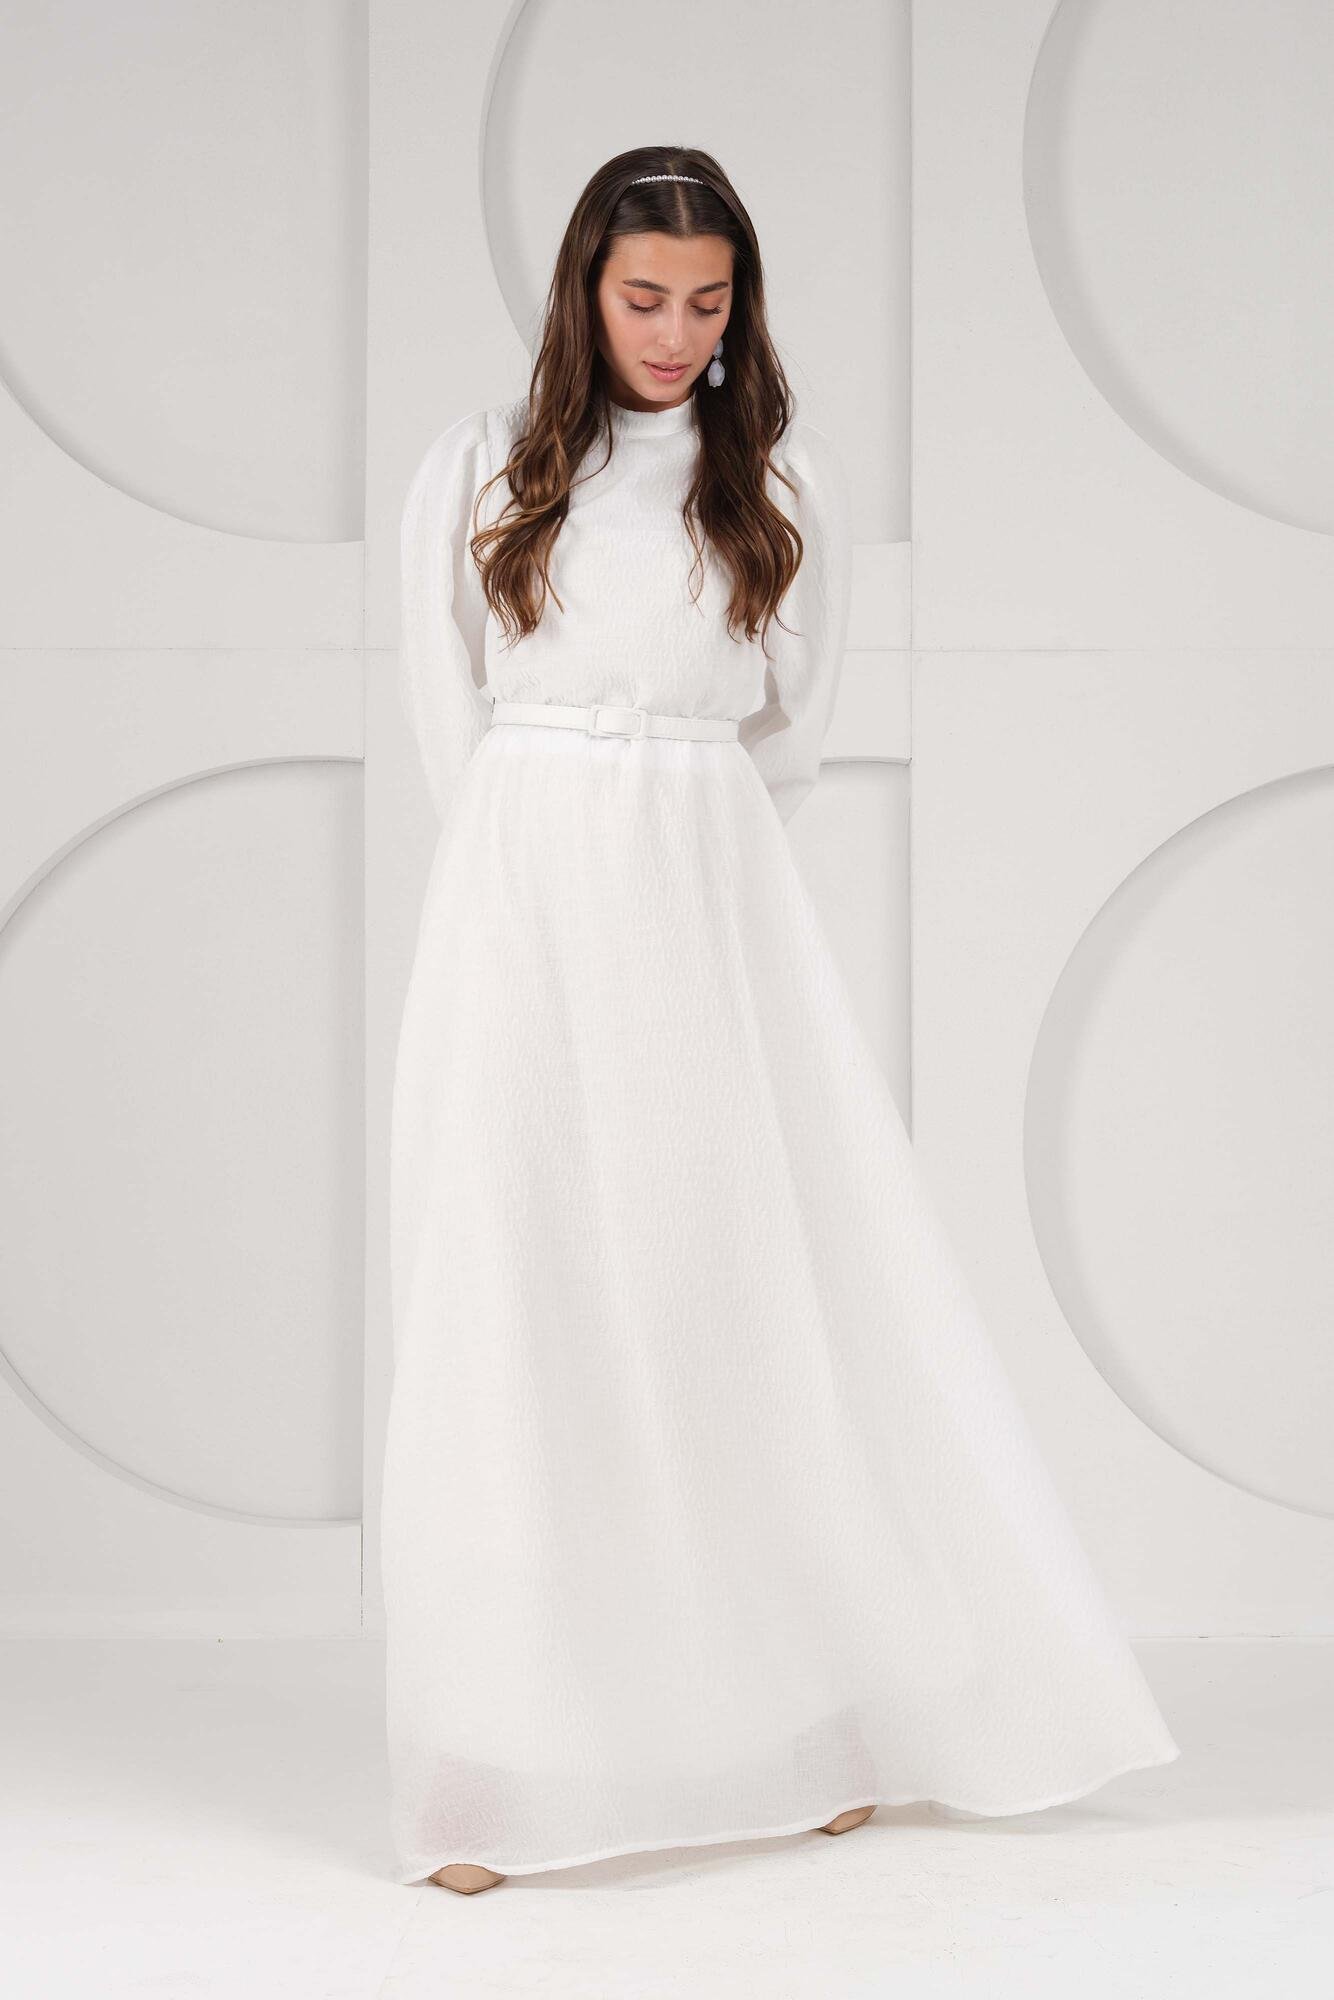 Lady White Dress